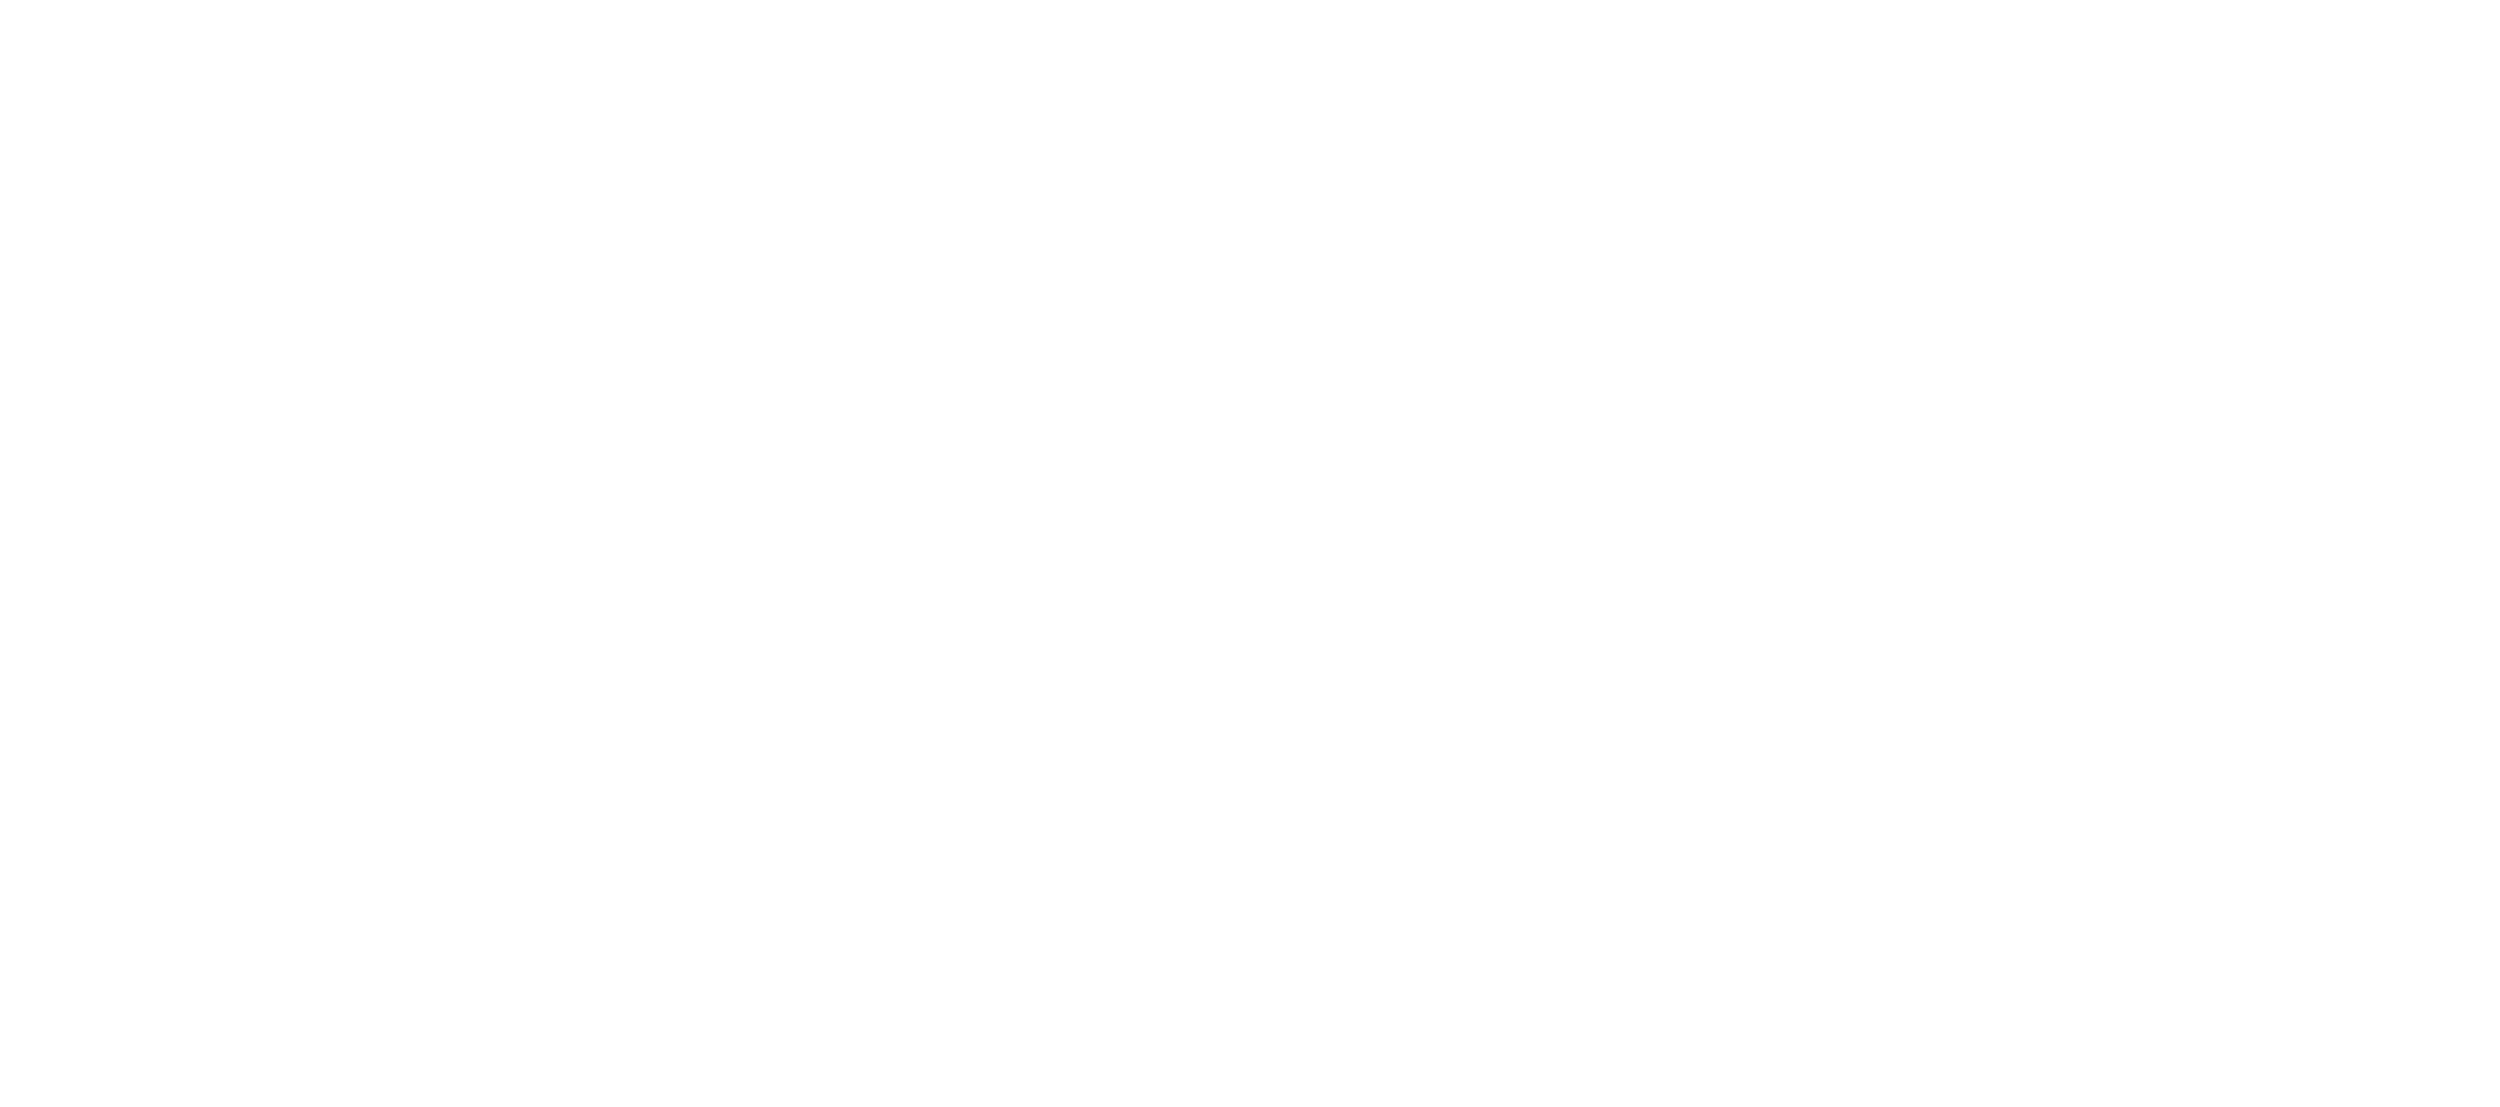  CNC TECHNIQUES